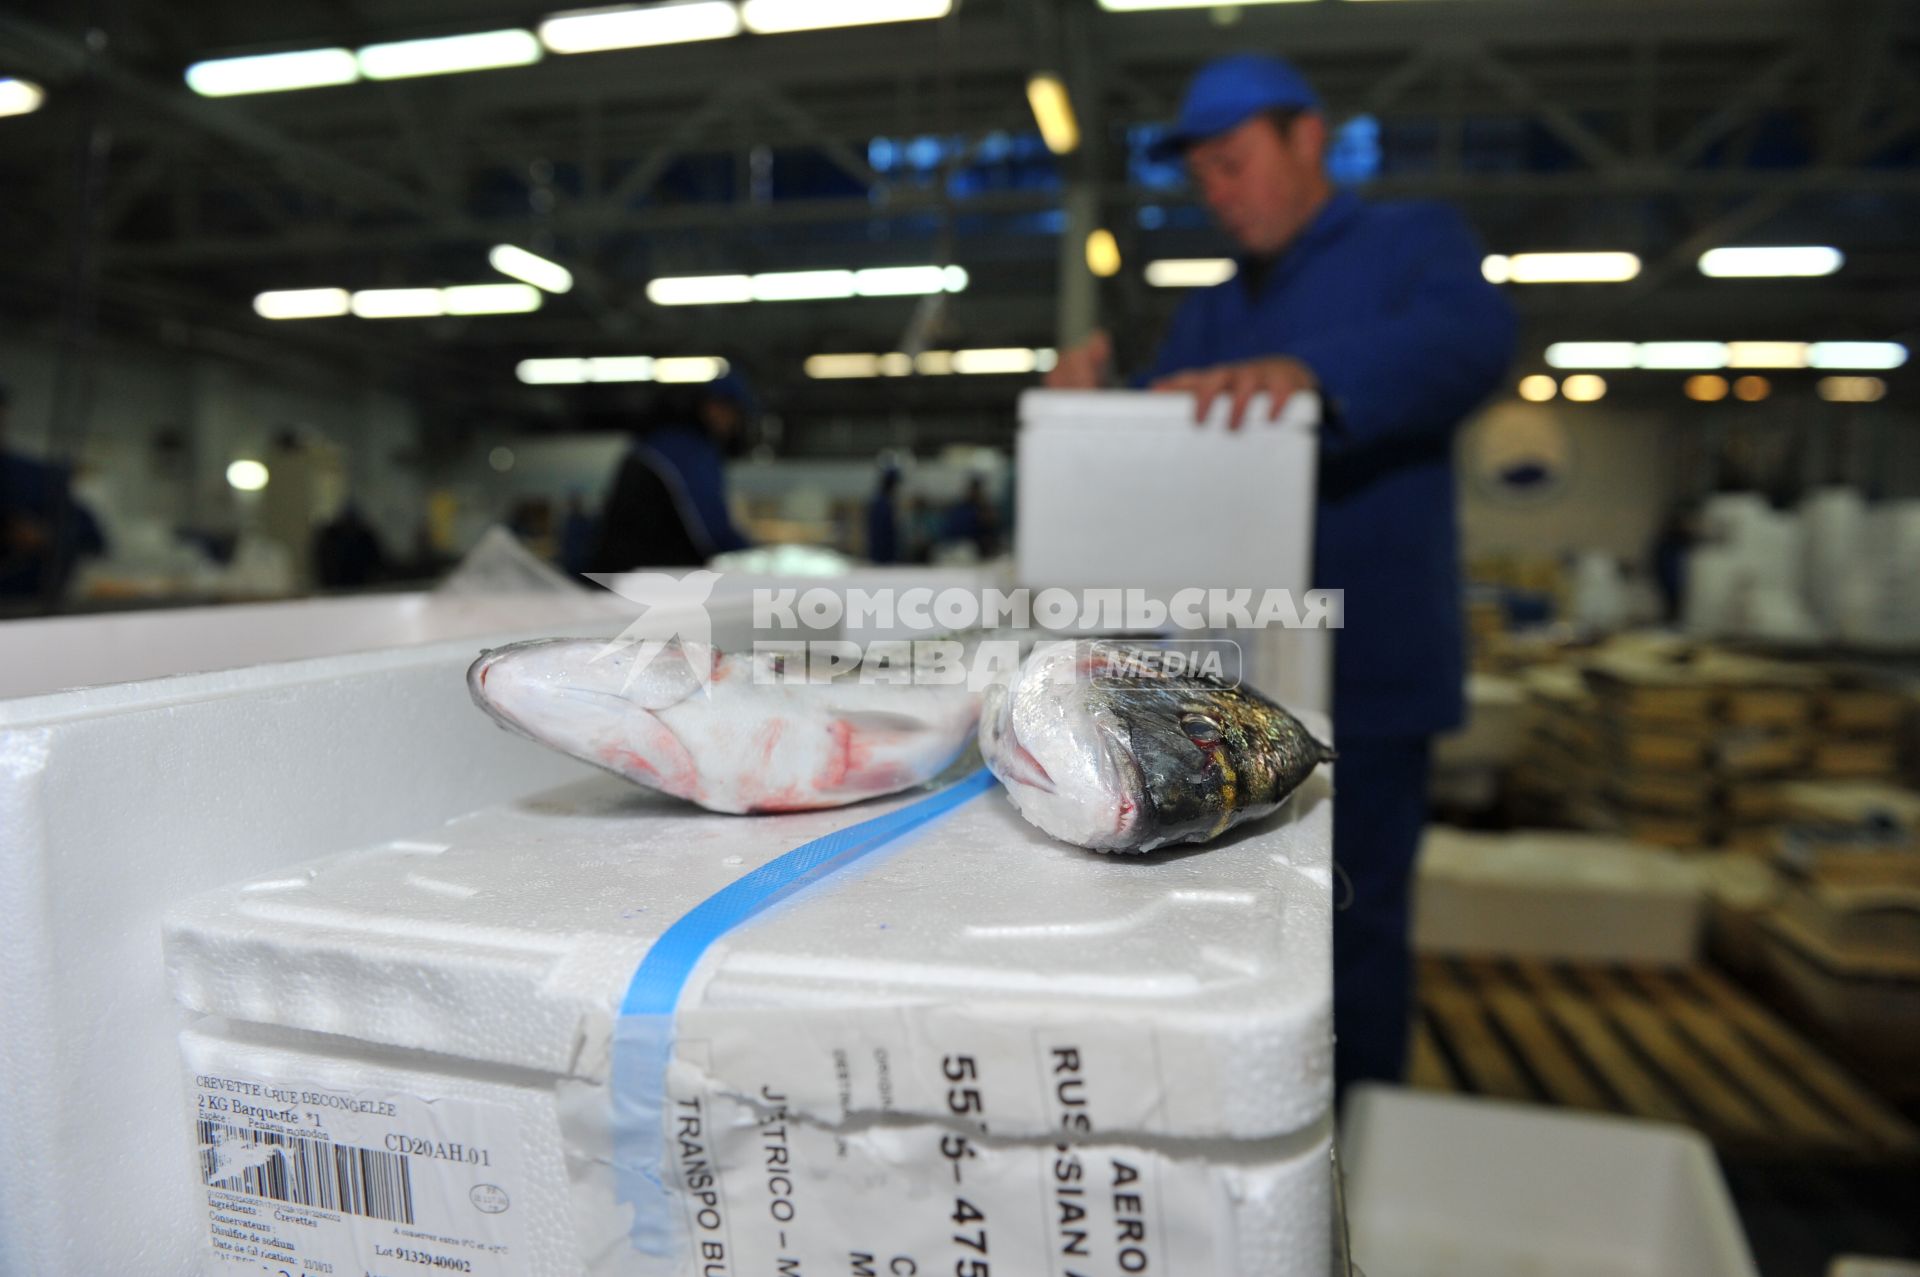 Профессиональная продажа морепродуктов и охлажденной рыбы. Склад рыбной продукции компании  `La Maree`.  На снимке: охлажденная рыба.